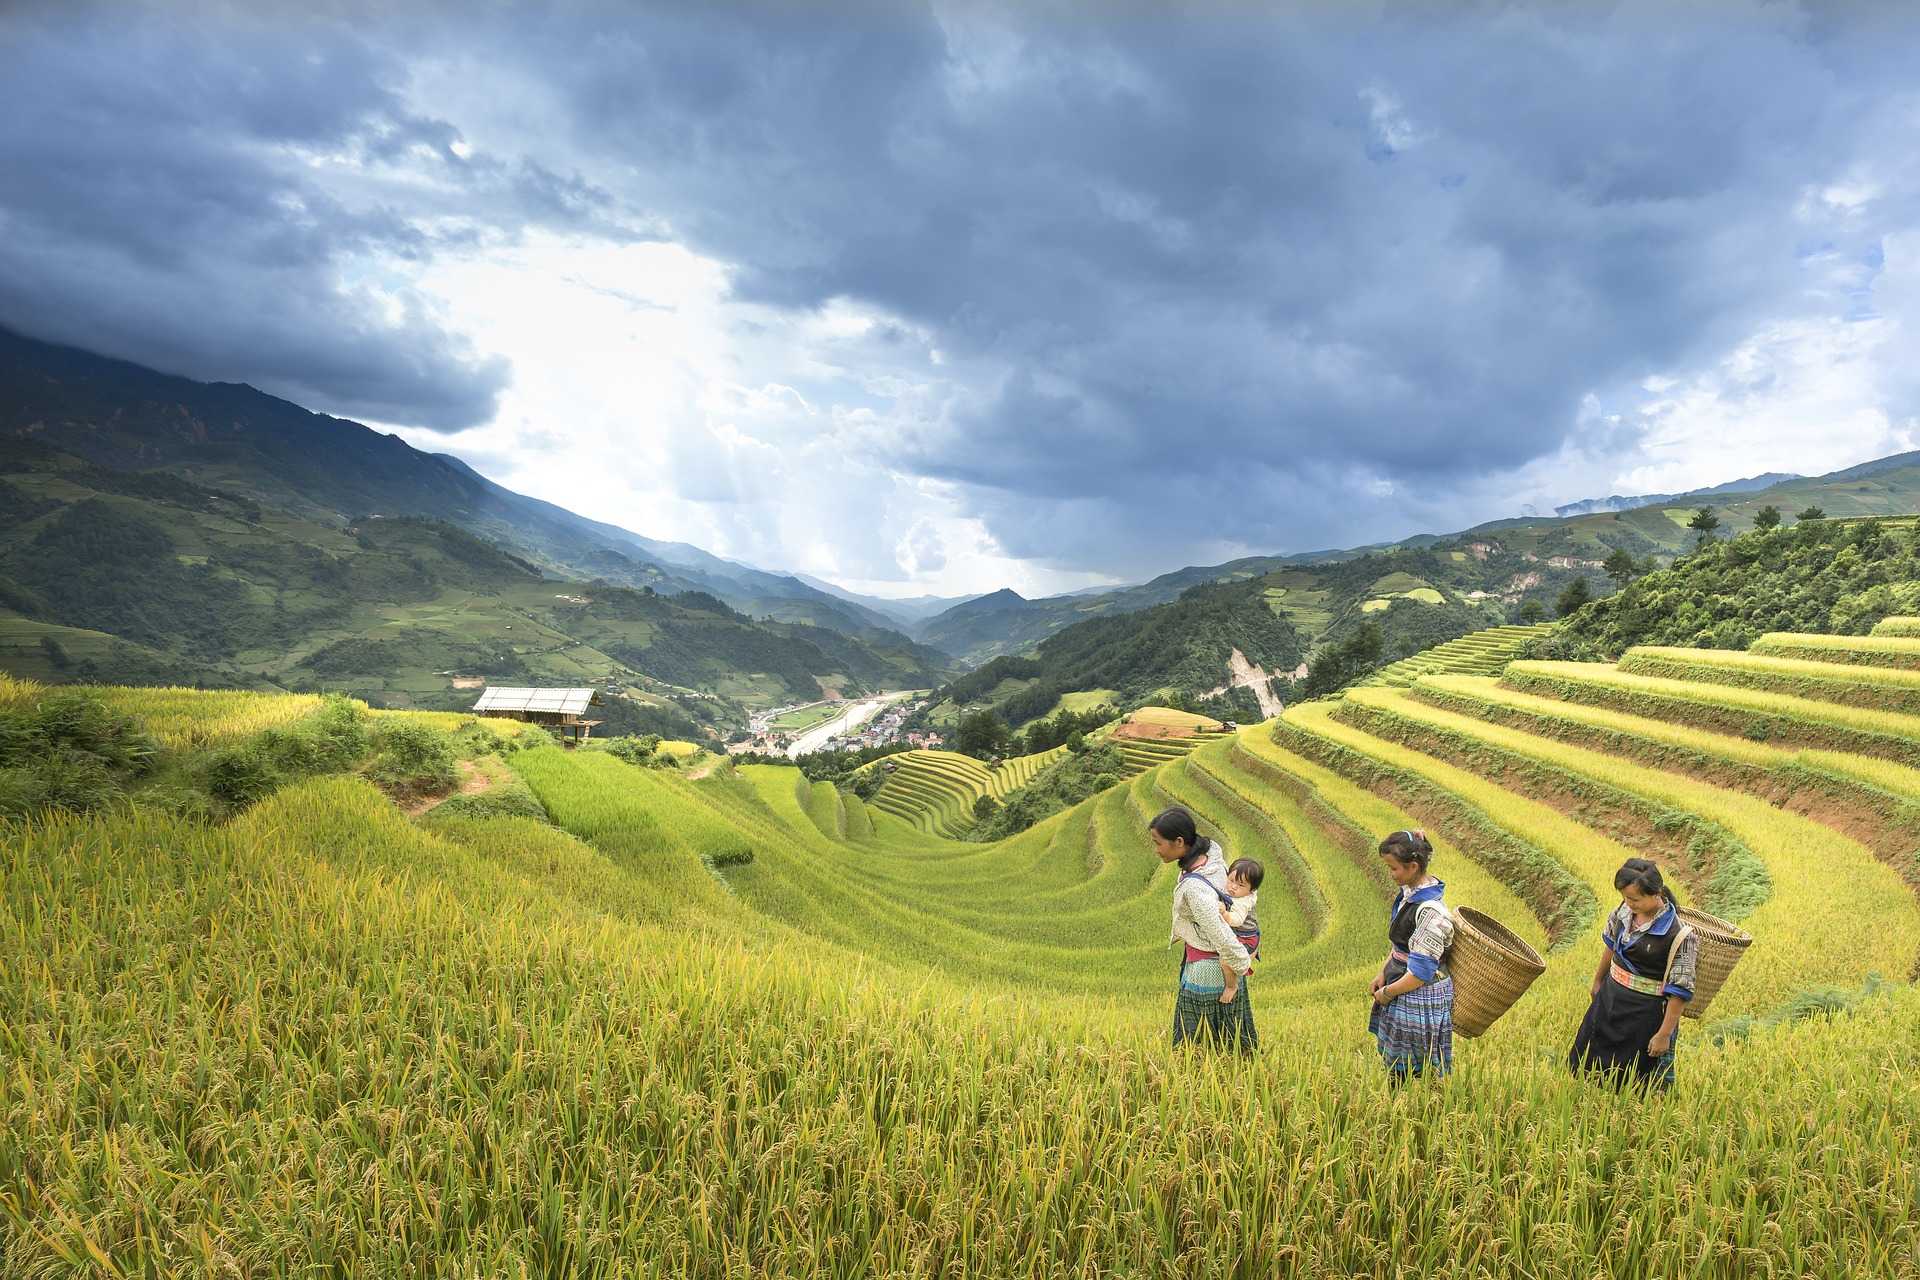 Femmes des minorités dans les rizières à Sapa au Vietnam